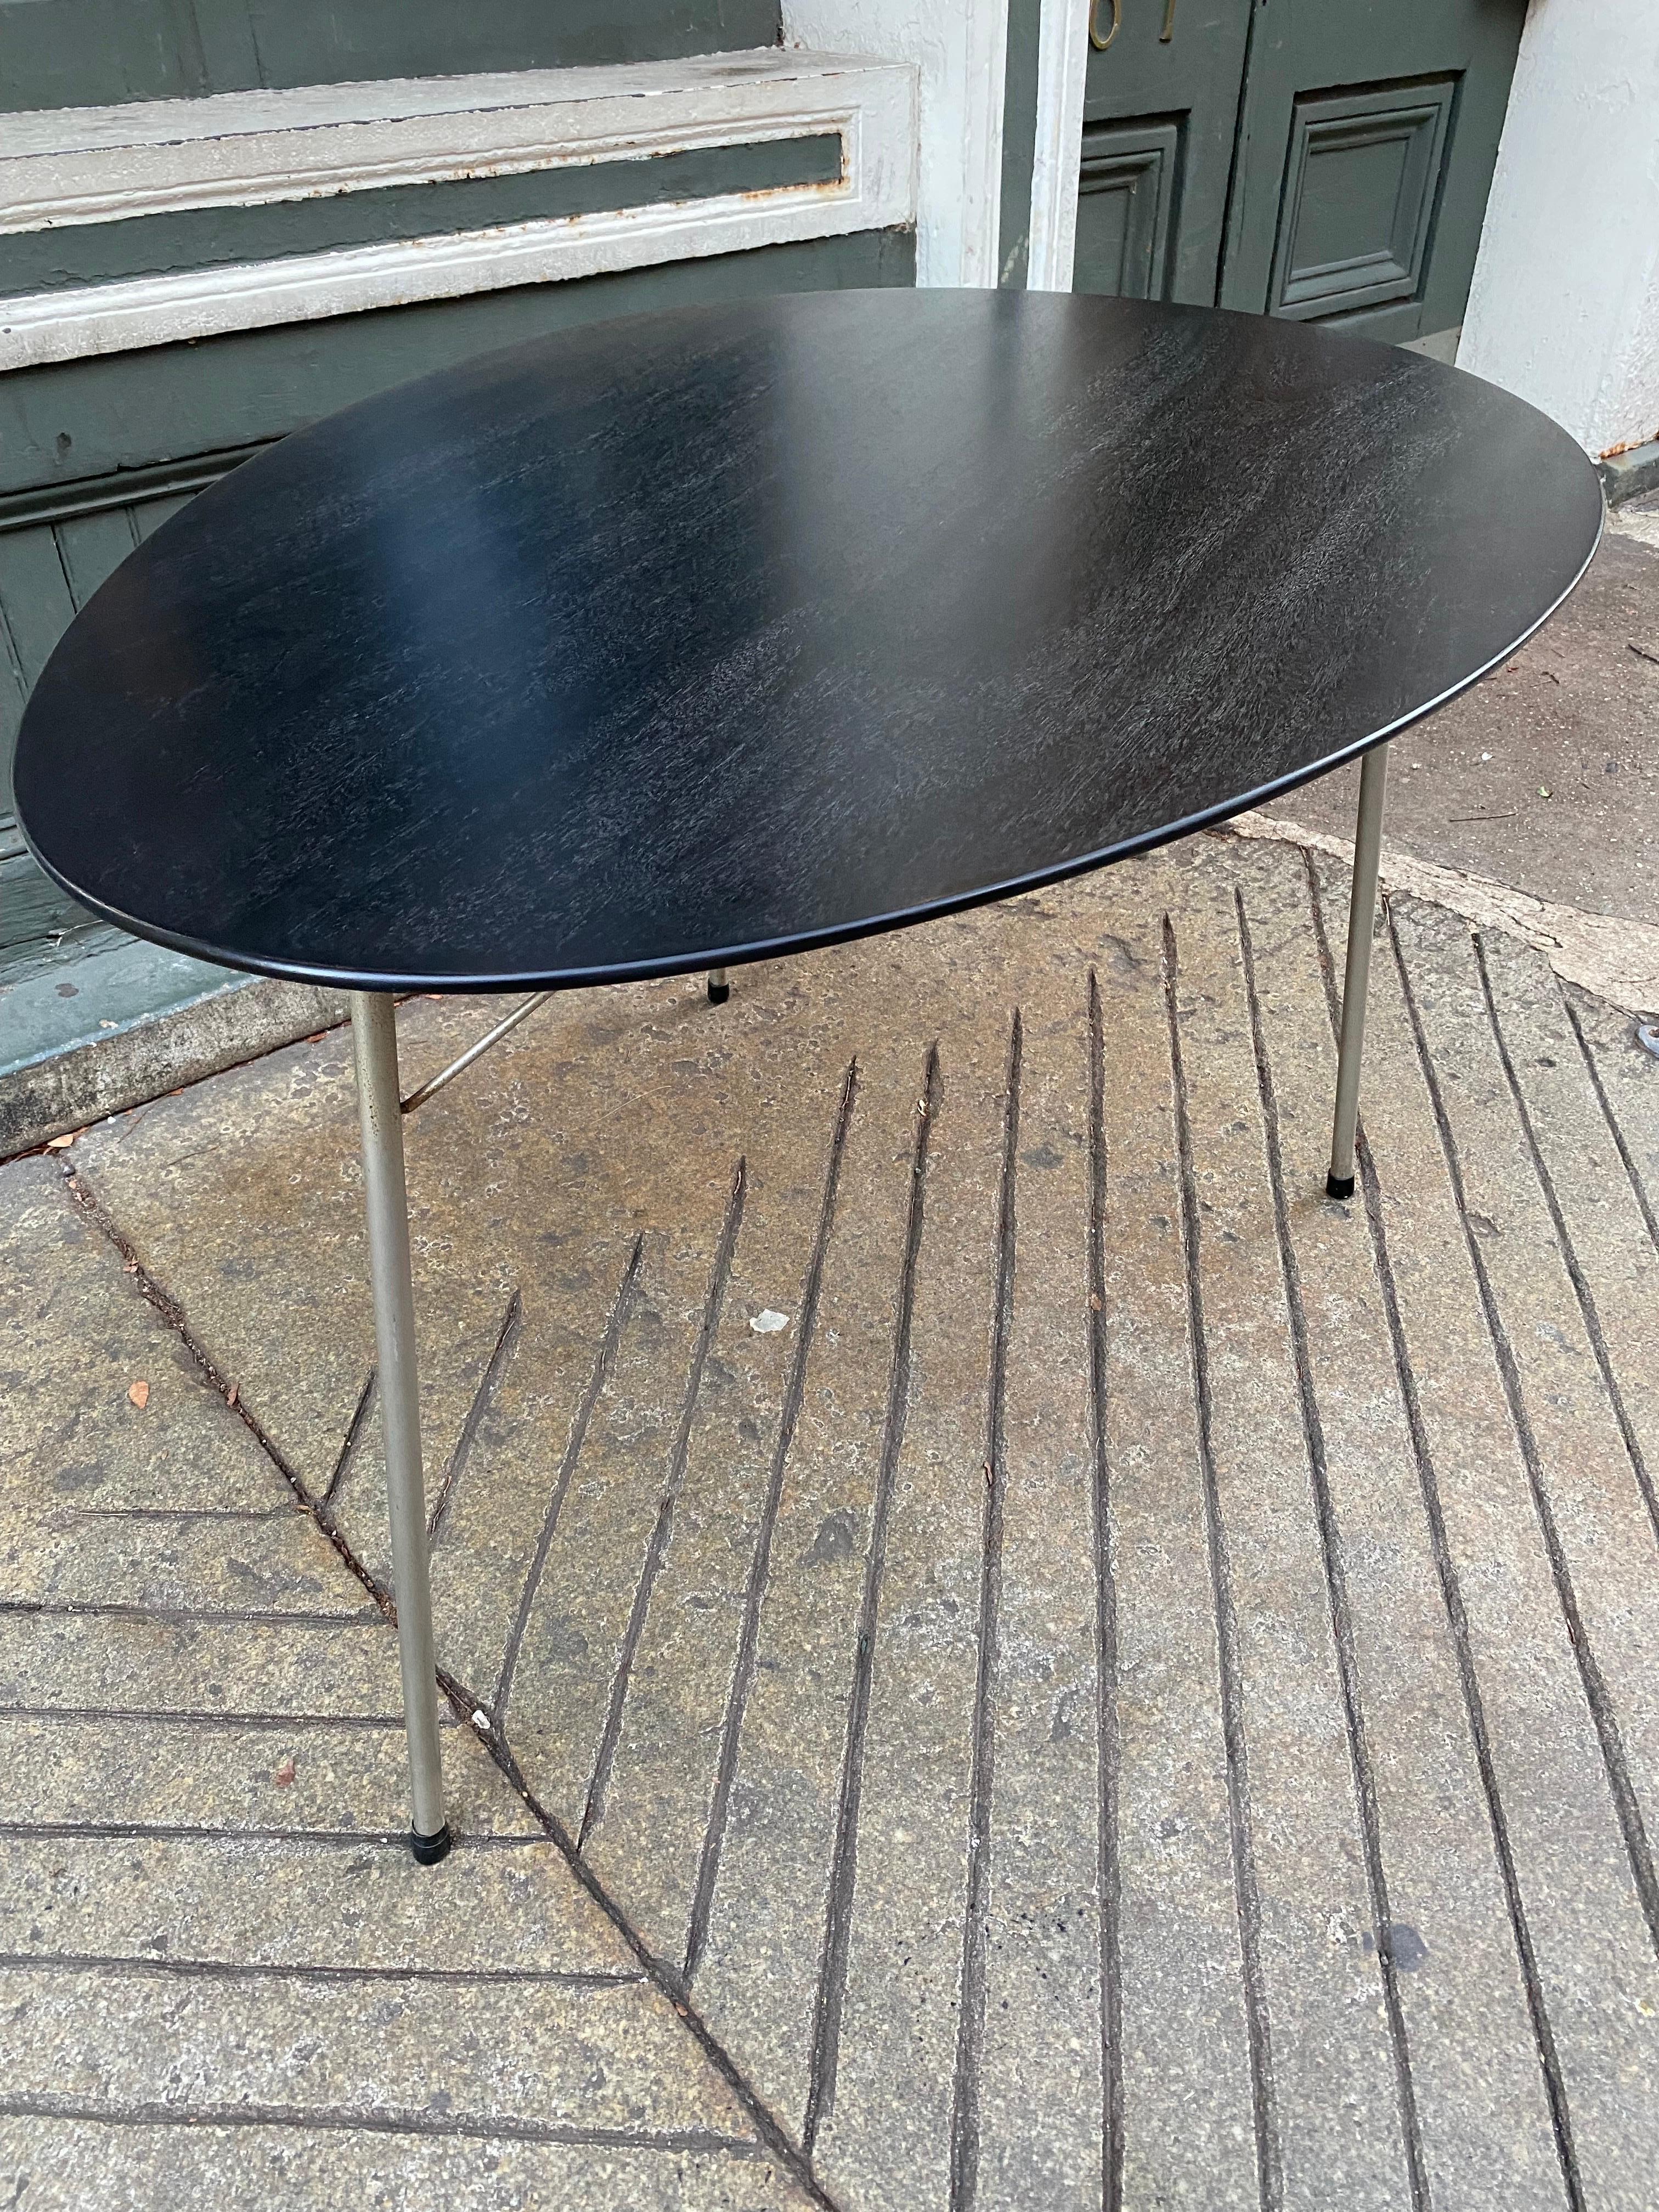 Arne Jacobsen Black Egg Table In Good Condition For Sale In Philadelphia, PA